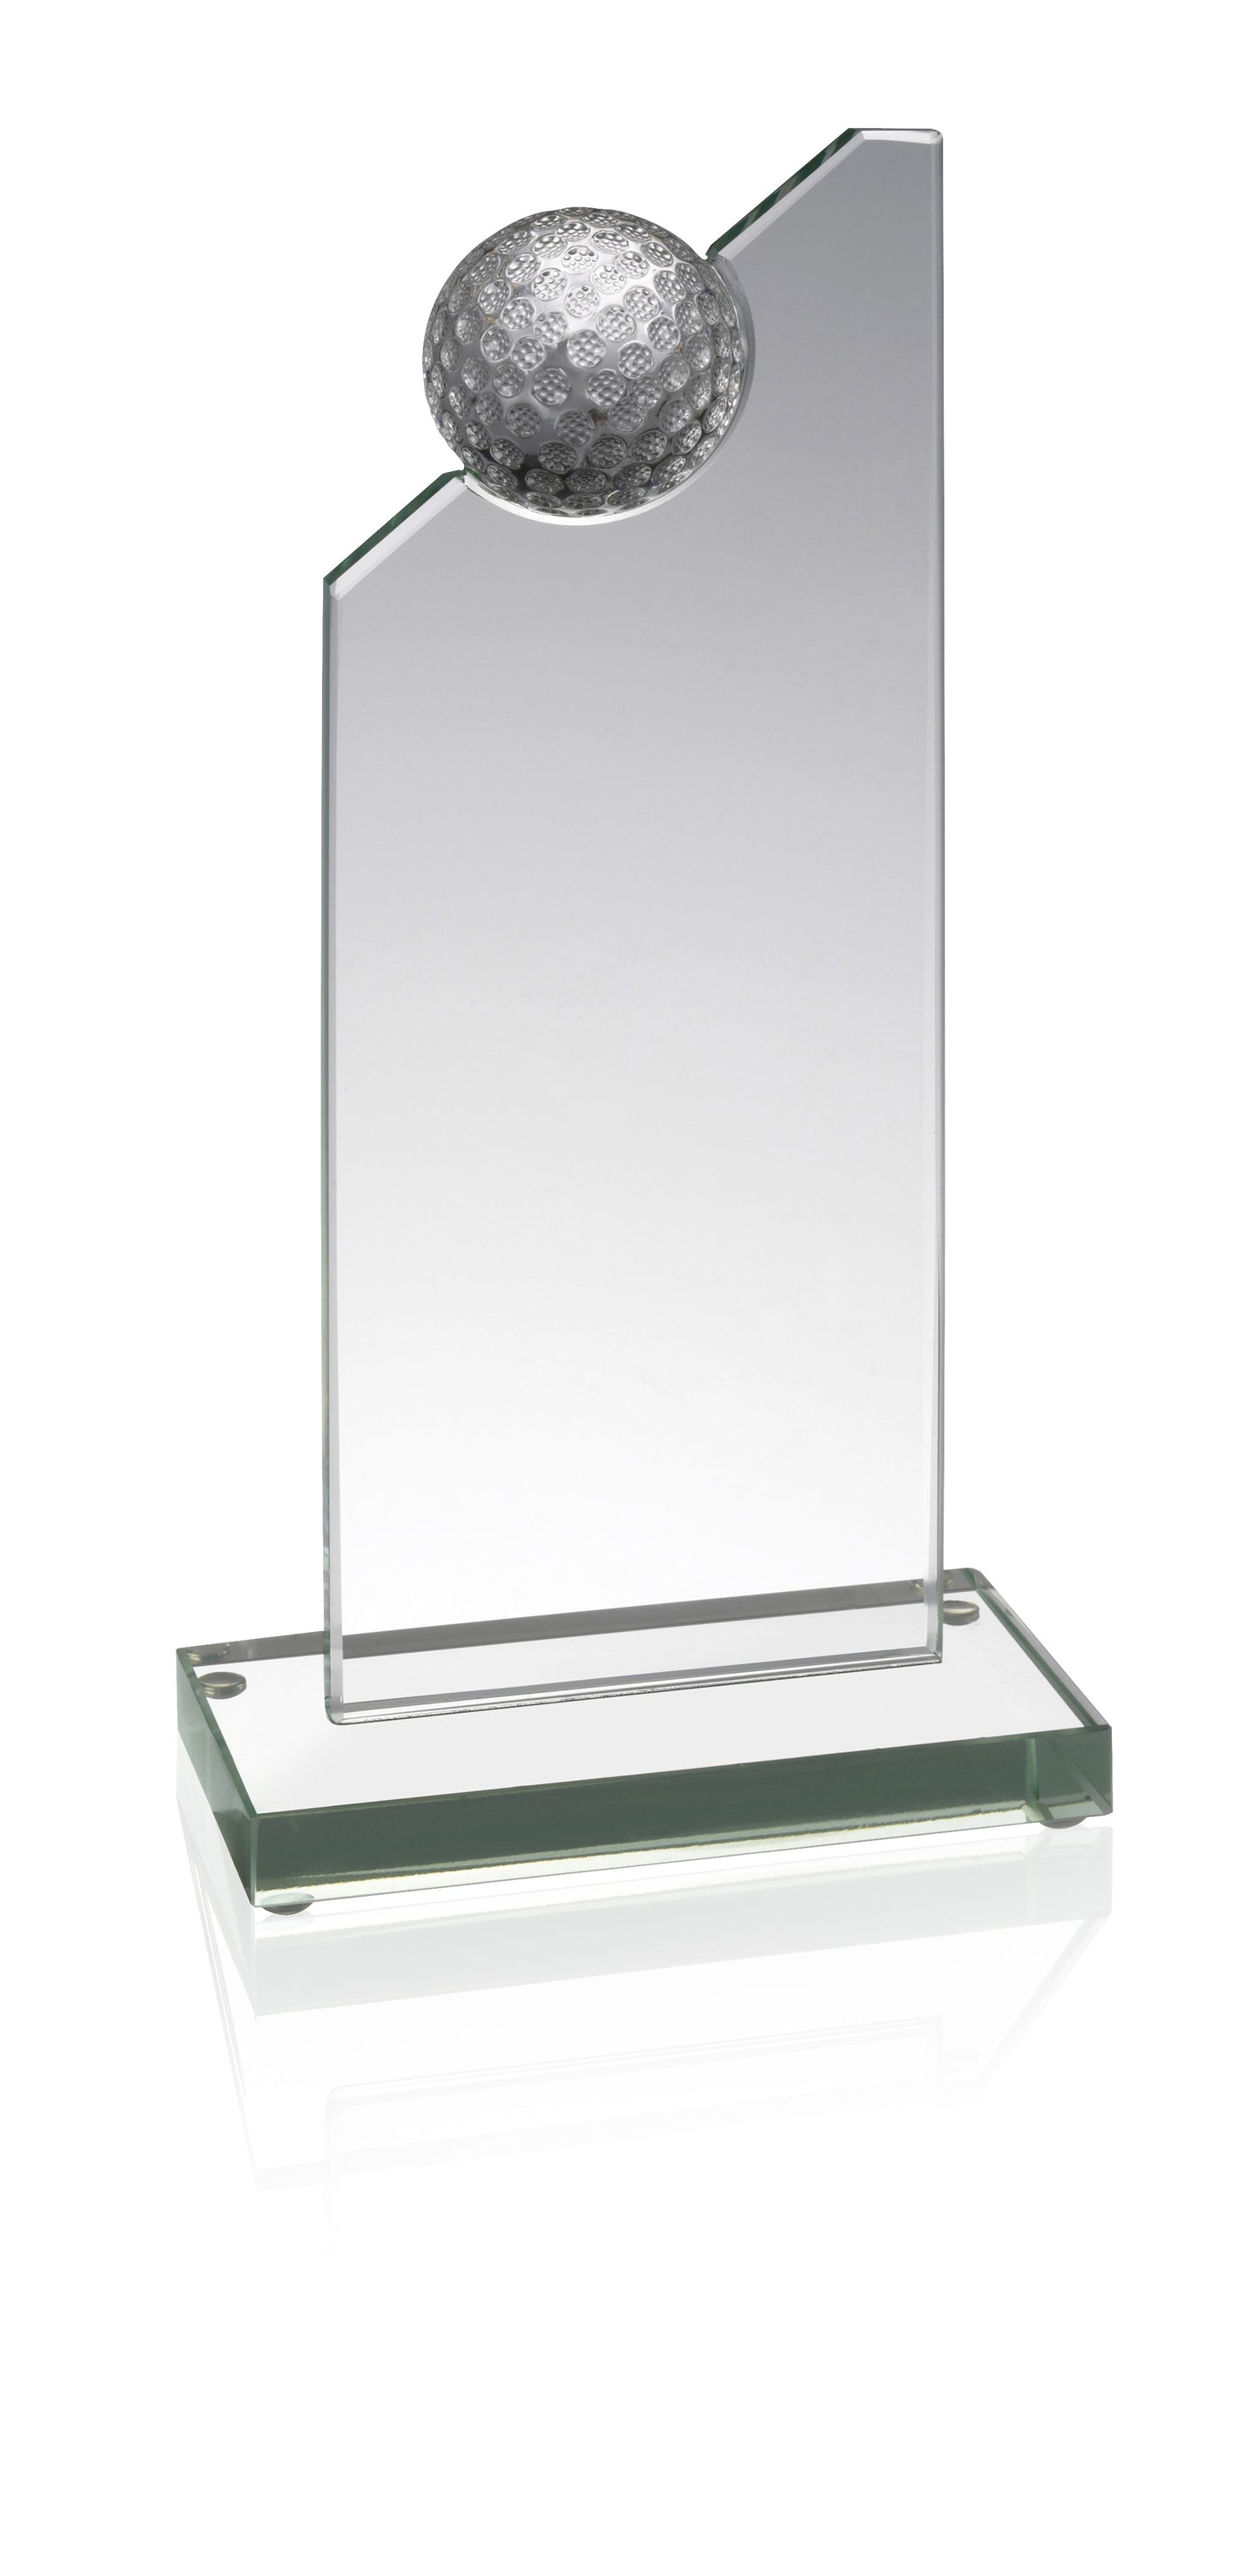 Glass Golf Award